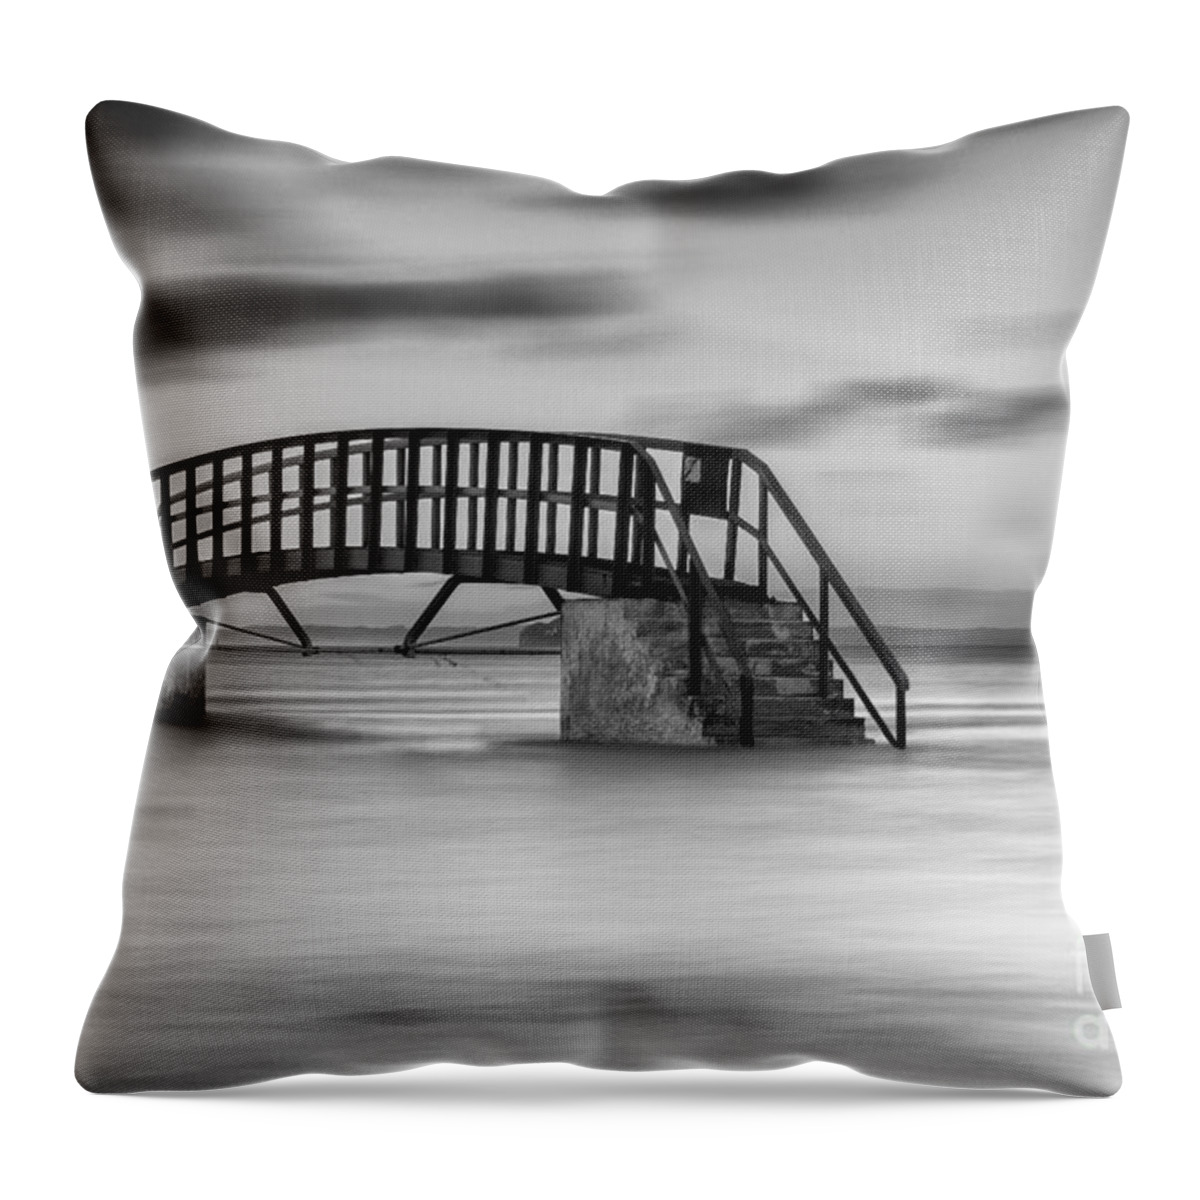 Dunbar Bridge Throw Pillow featuring the photograph Dunbar Sea Bridge.tif #1 by Keith Thorburn LRPS EFIAP CPAGB